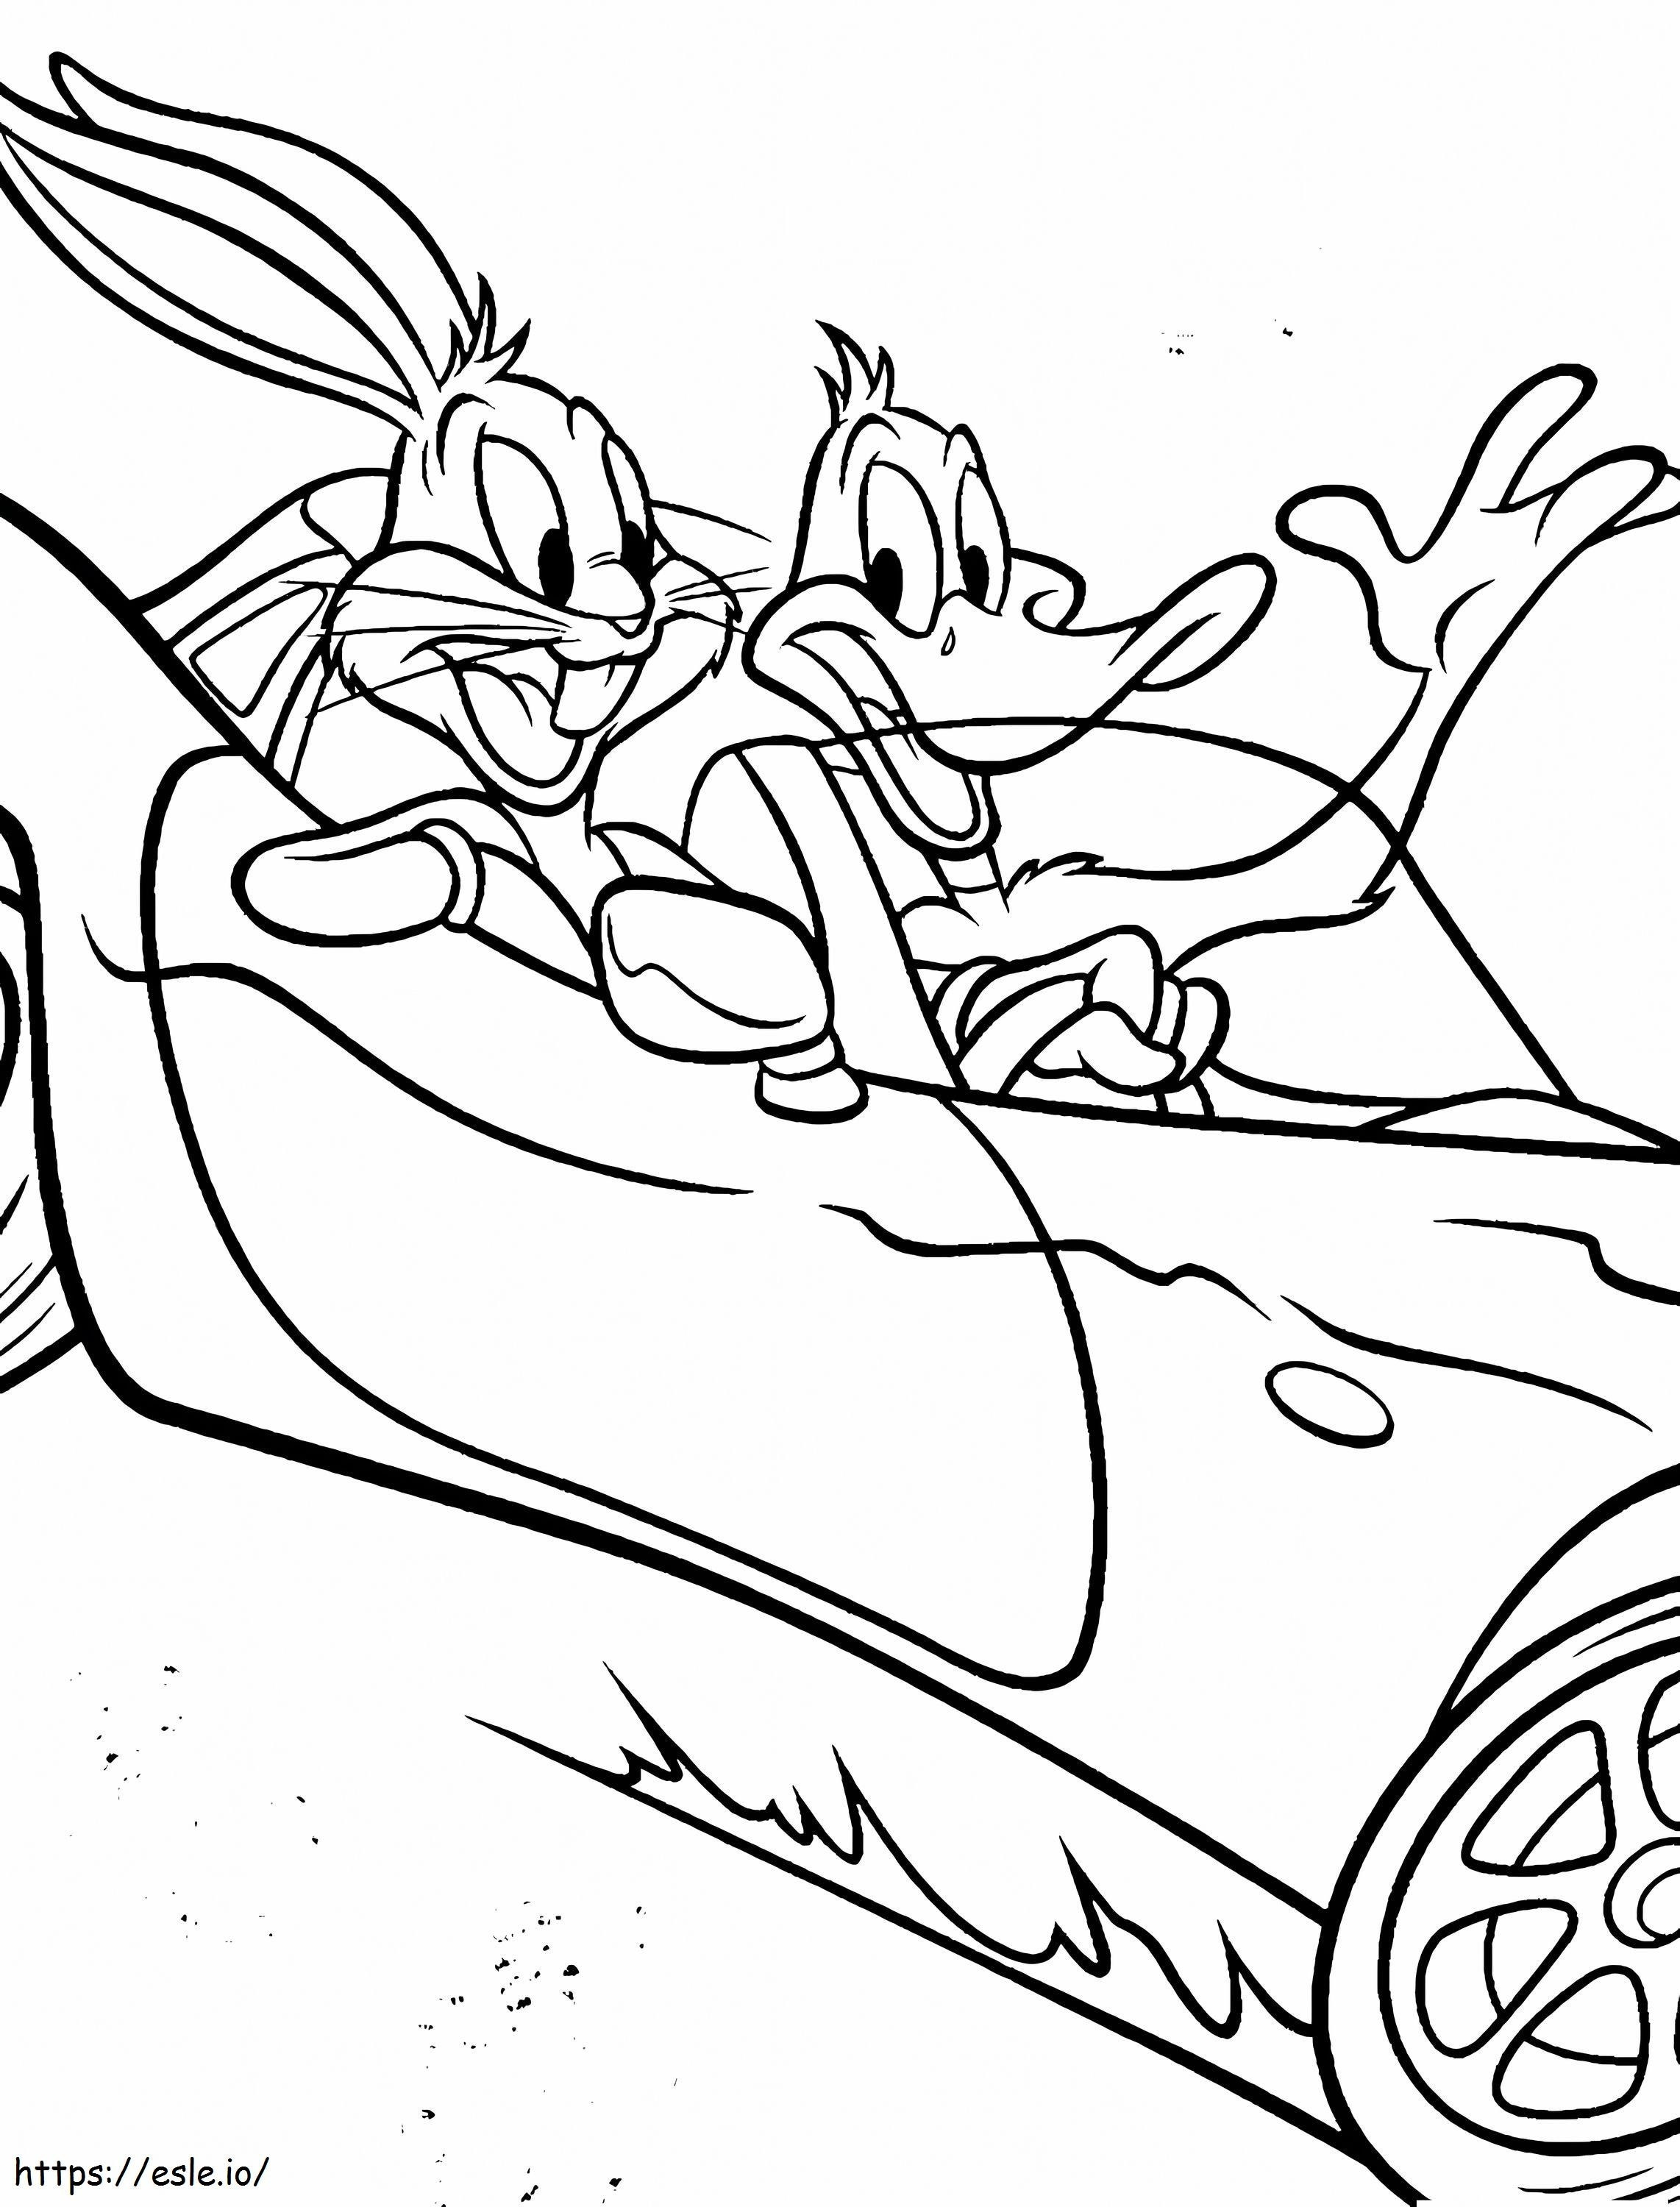 Daffy Duck e Bugs Bunny in macchina da colorare